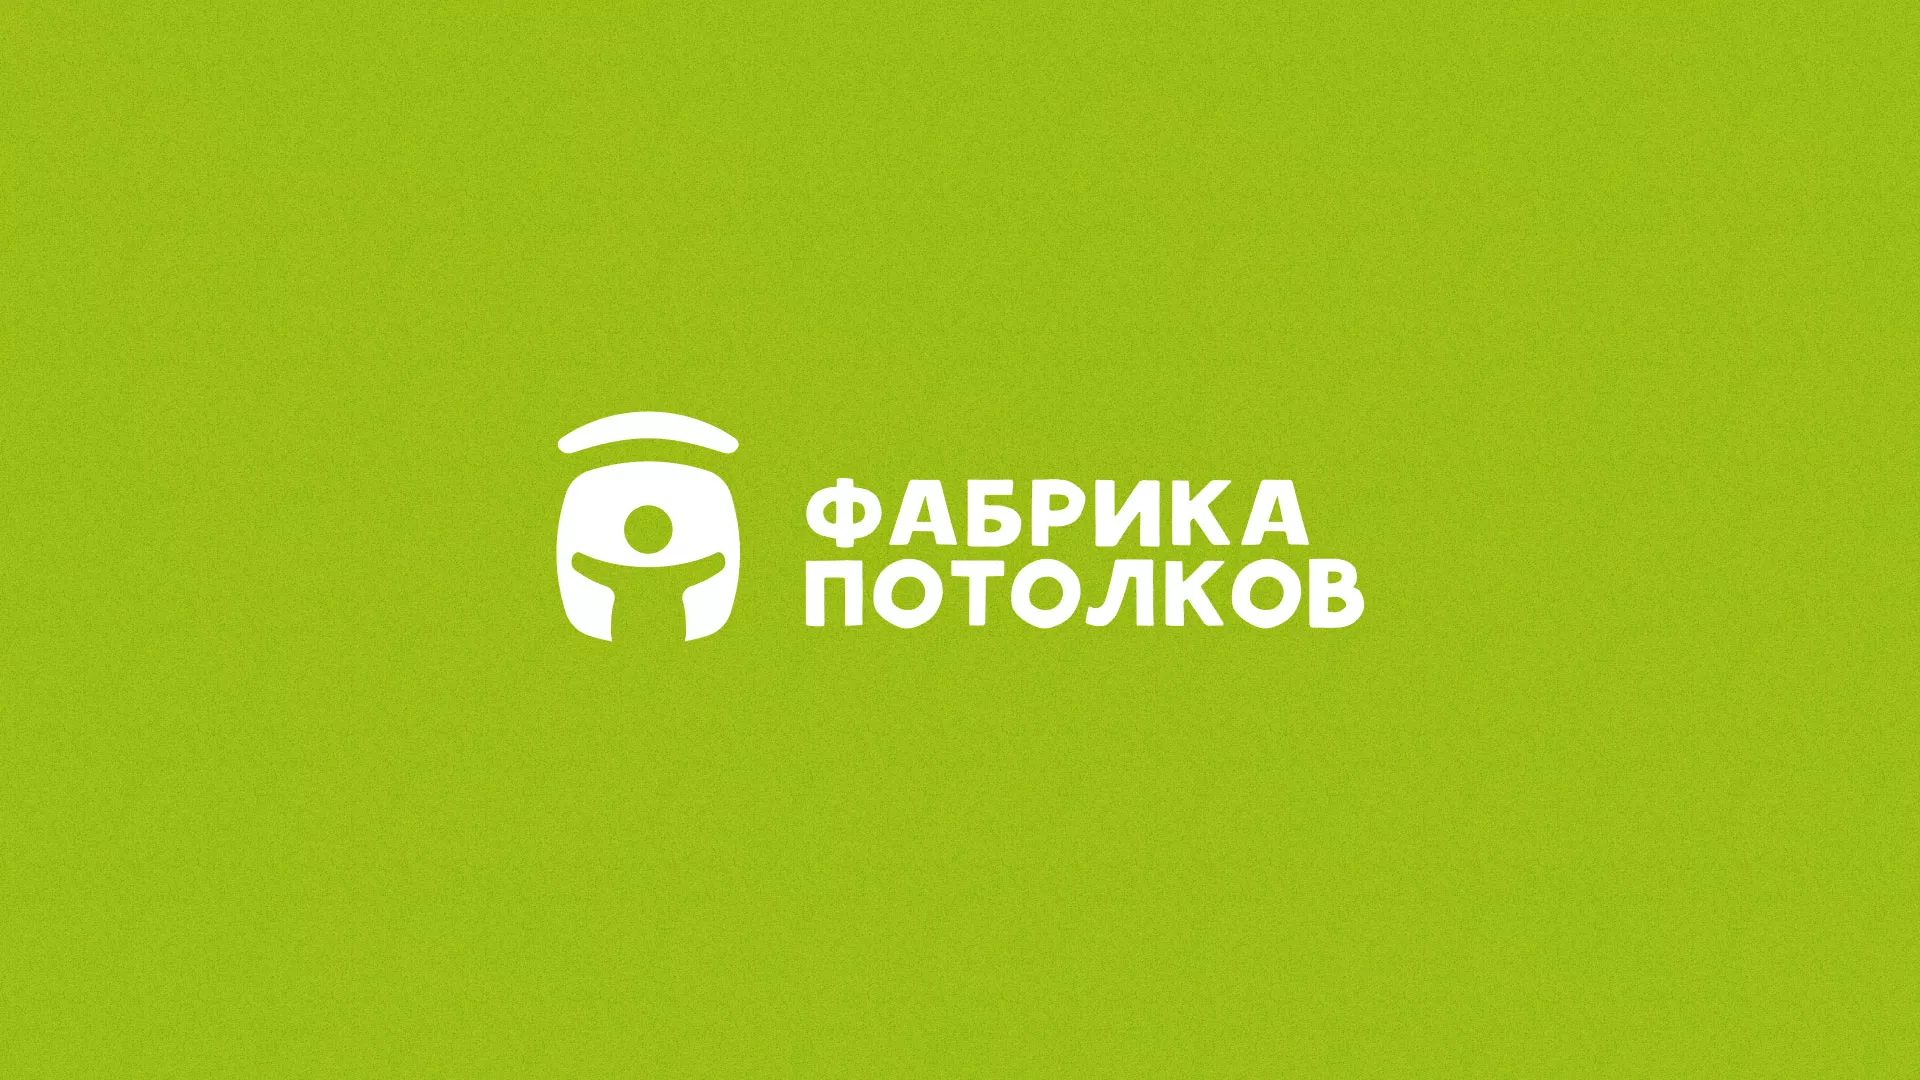 Разработка логотипа для производства натяжных потолков в Вязниках